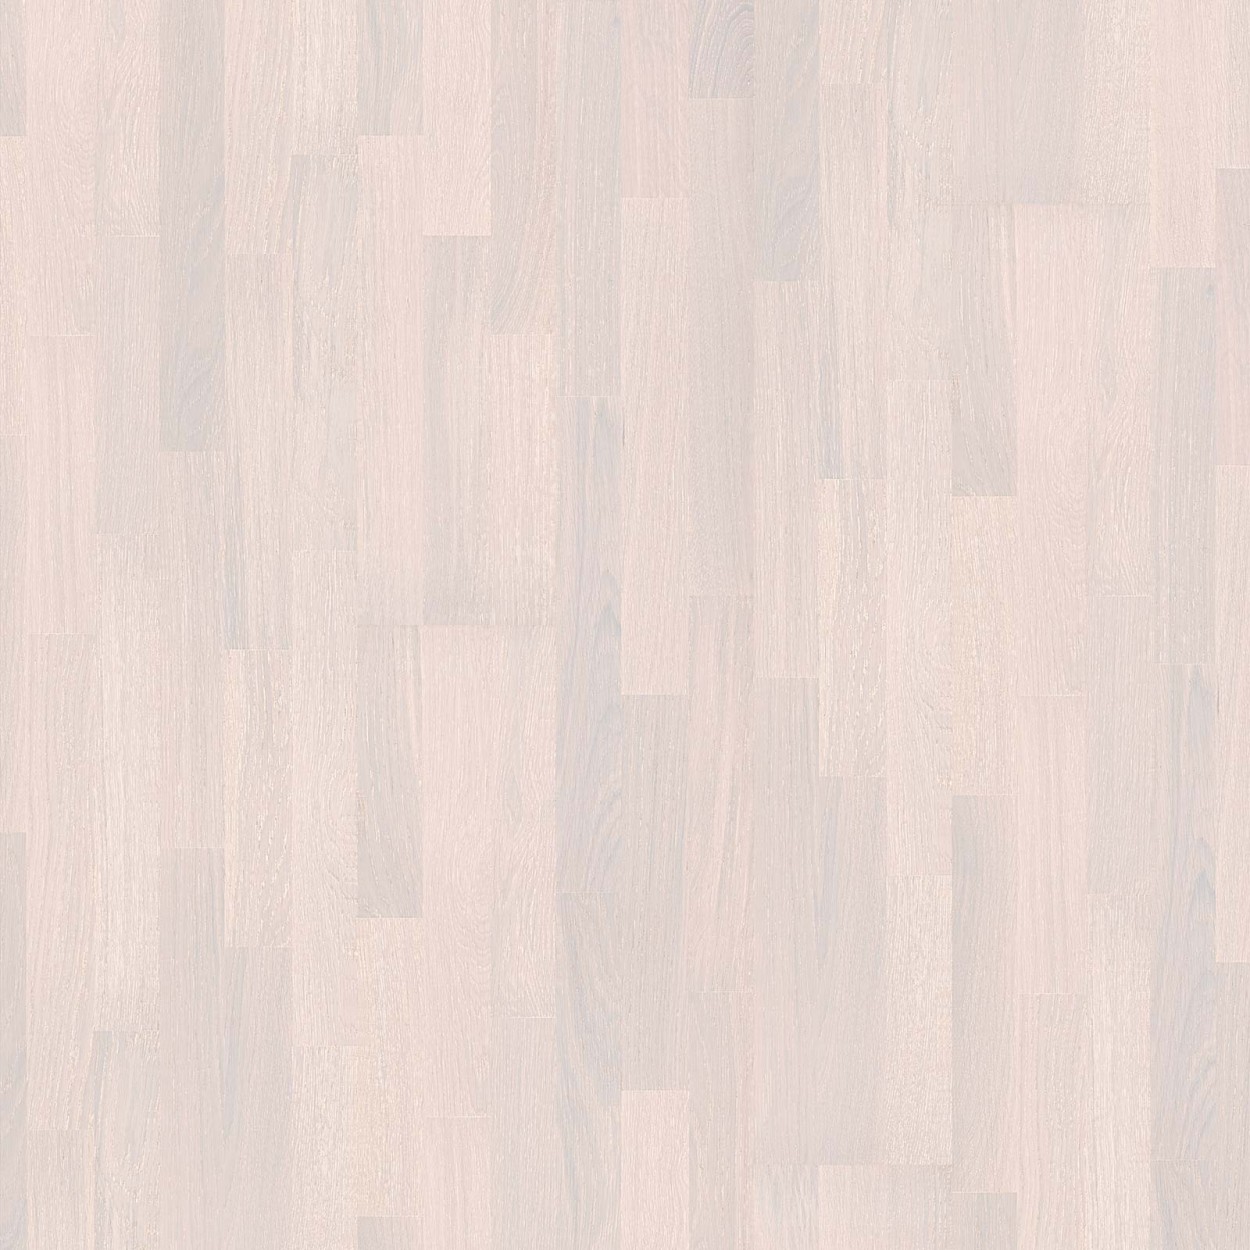 Karras - Ter Hürne - Πάτωμα Προγυαλισμένο Satin Elements Collection Oak old white